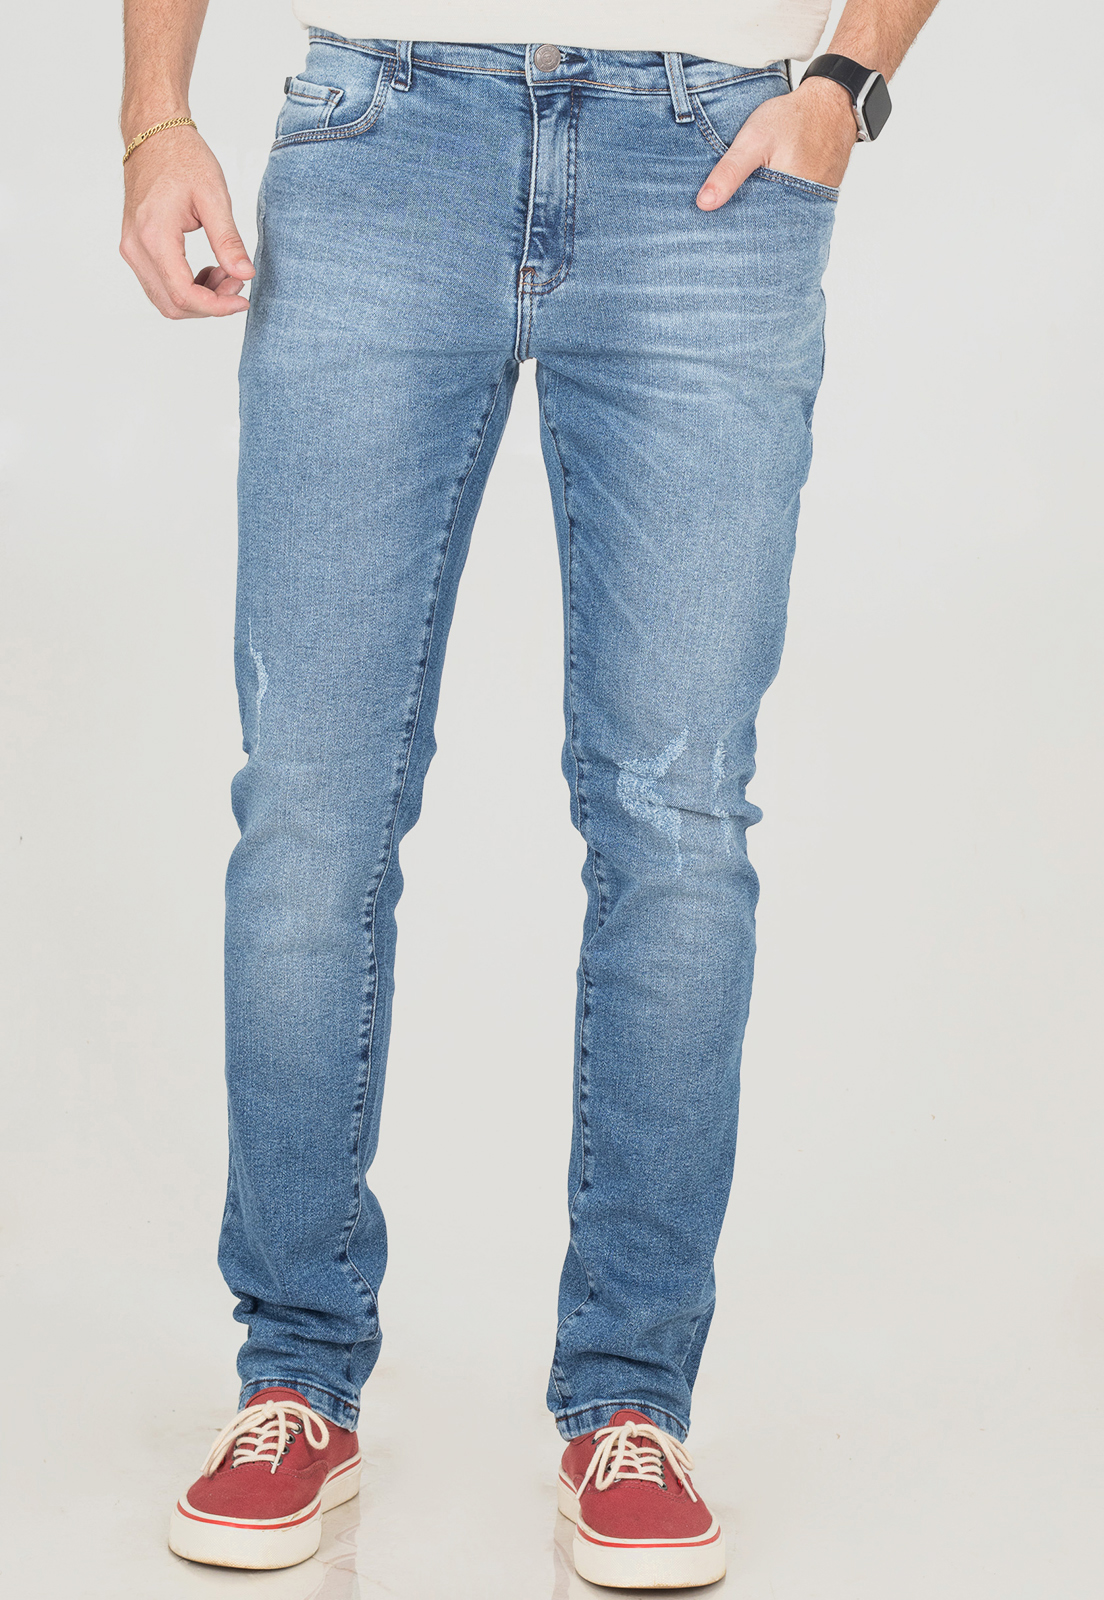 Calça Jeans Slim Flexy Masculina Desfiada Com Elastano